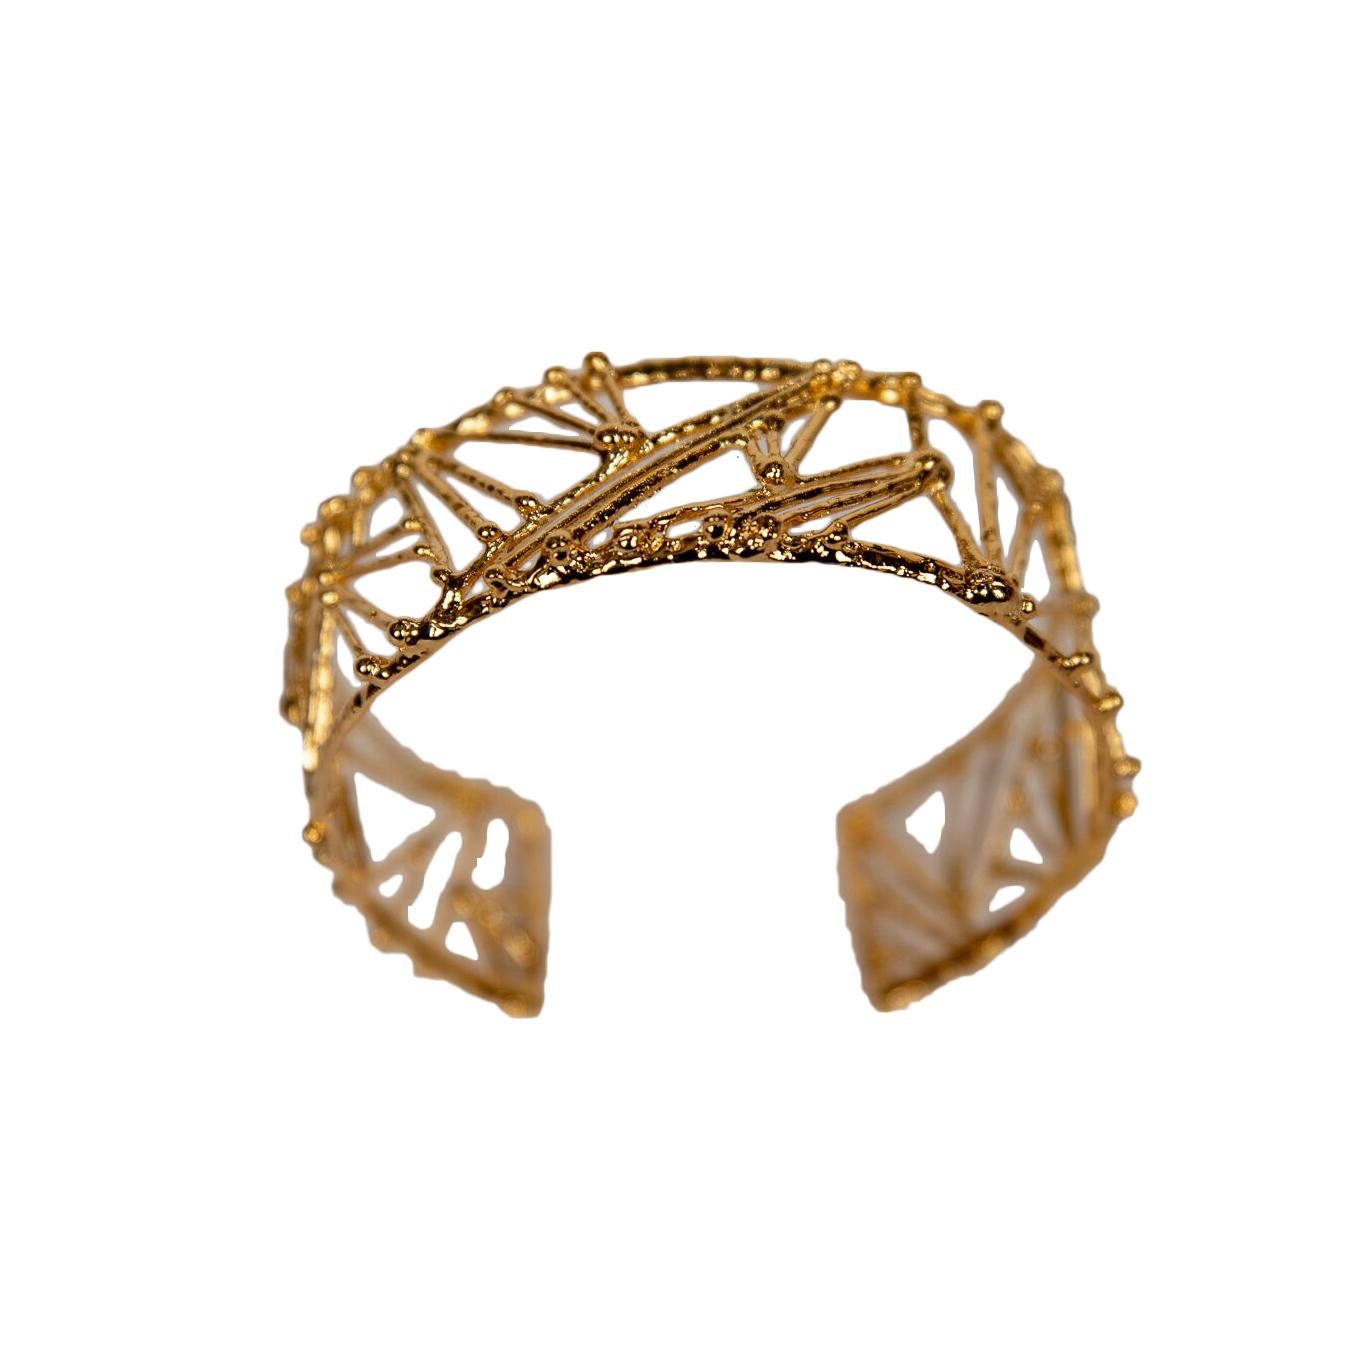 Wide Gold Plated Bronze "Twig" Bracelet by Franck Evennou, France, 2018